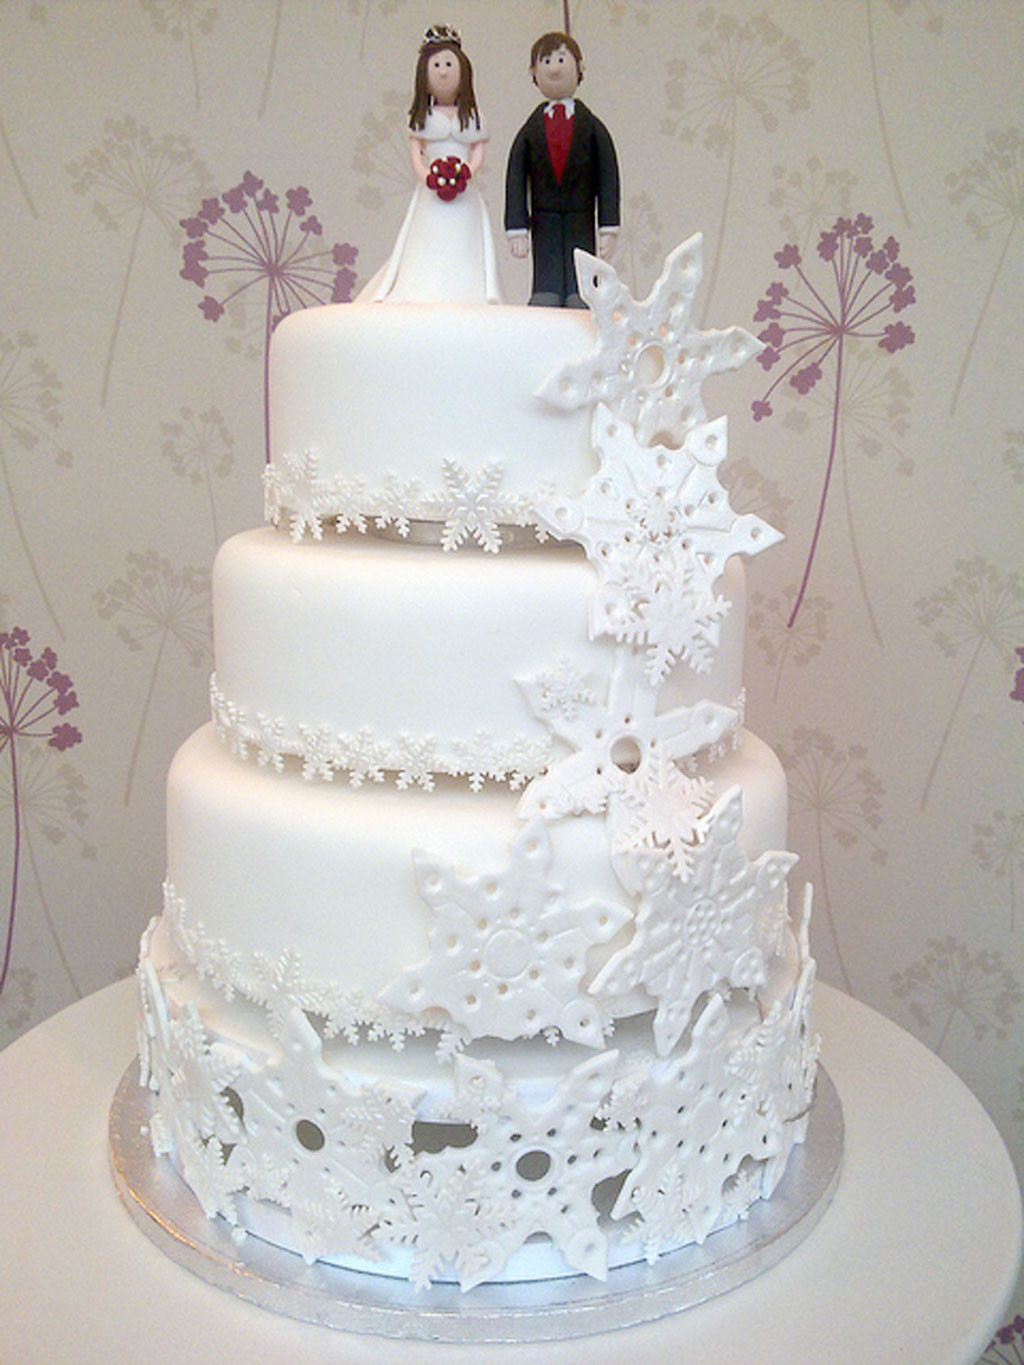 Snowflakes Wedding Cakes
 Snowflake Wedding Cake Wedding Cake Cake Ideas